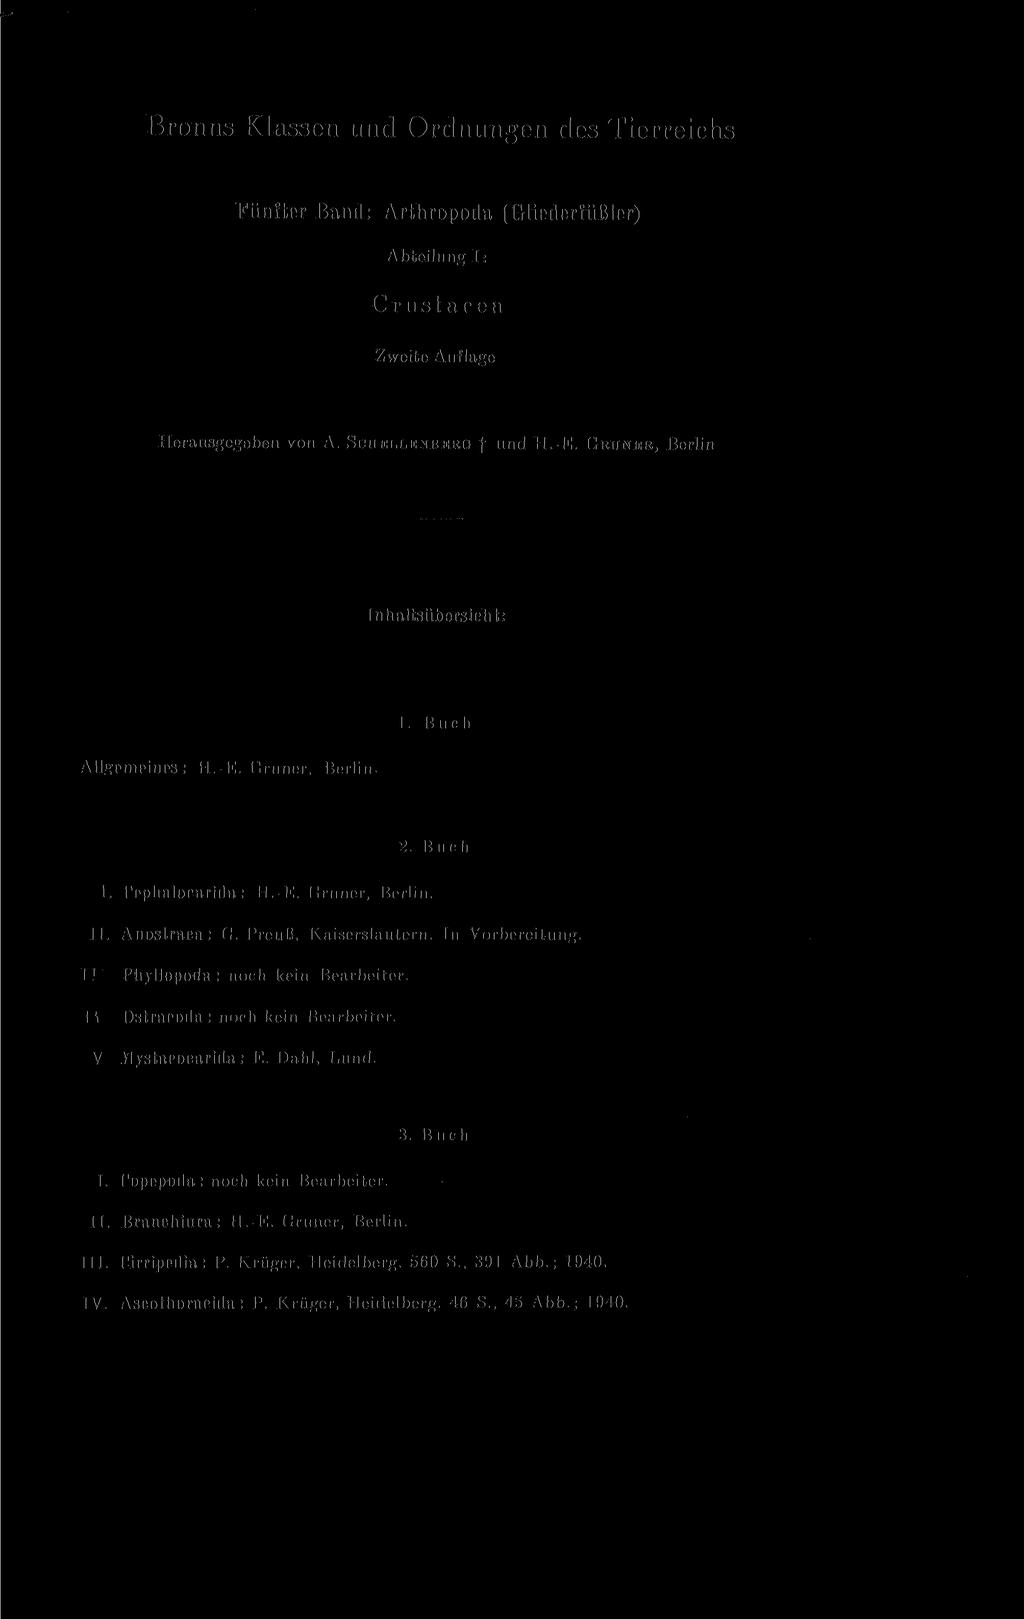 Bronns Klassen und Ordnungen des Tierreichs Fünfter Band: Arthropoda (Gliederfüßler) Abteilung T: C r 11 s t a e e a Zweite Auflage Herausgegeben von A. SCHELLENBERG f und H.-E.